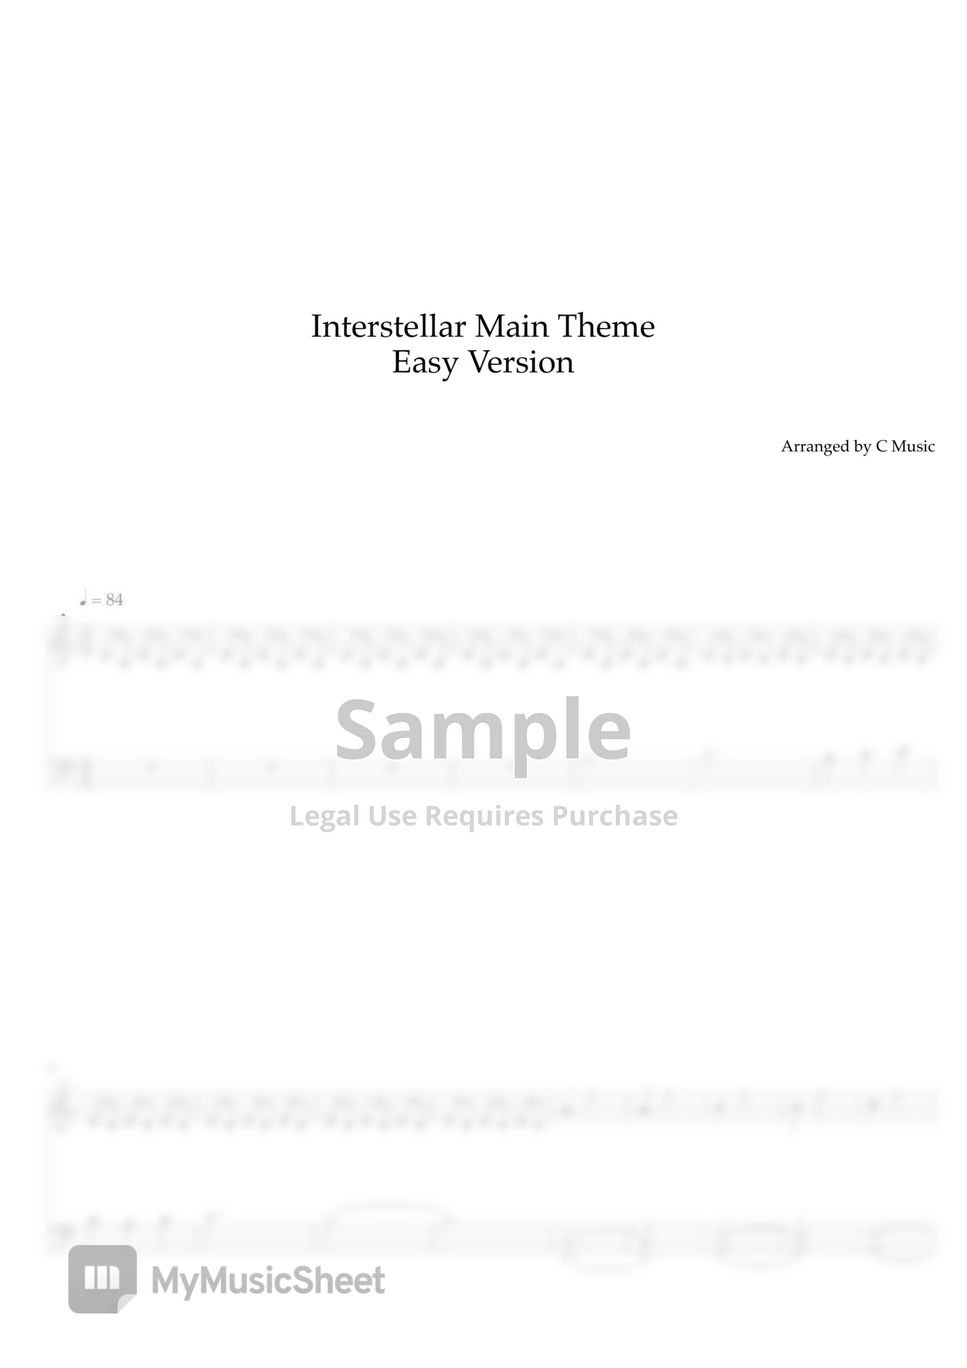 Hans Zimmer - Interstellar Main Theme (Easy Version) by C Music